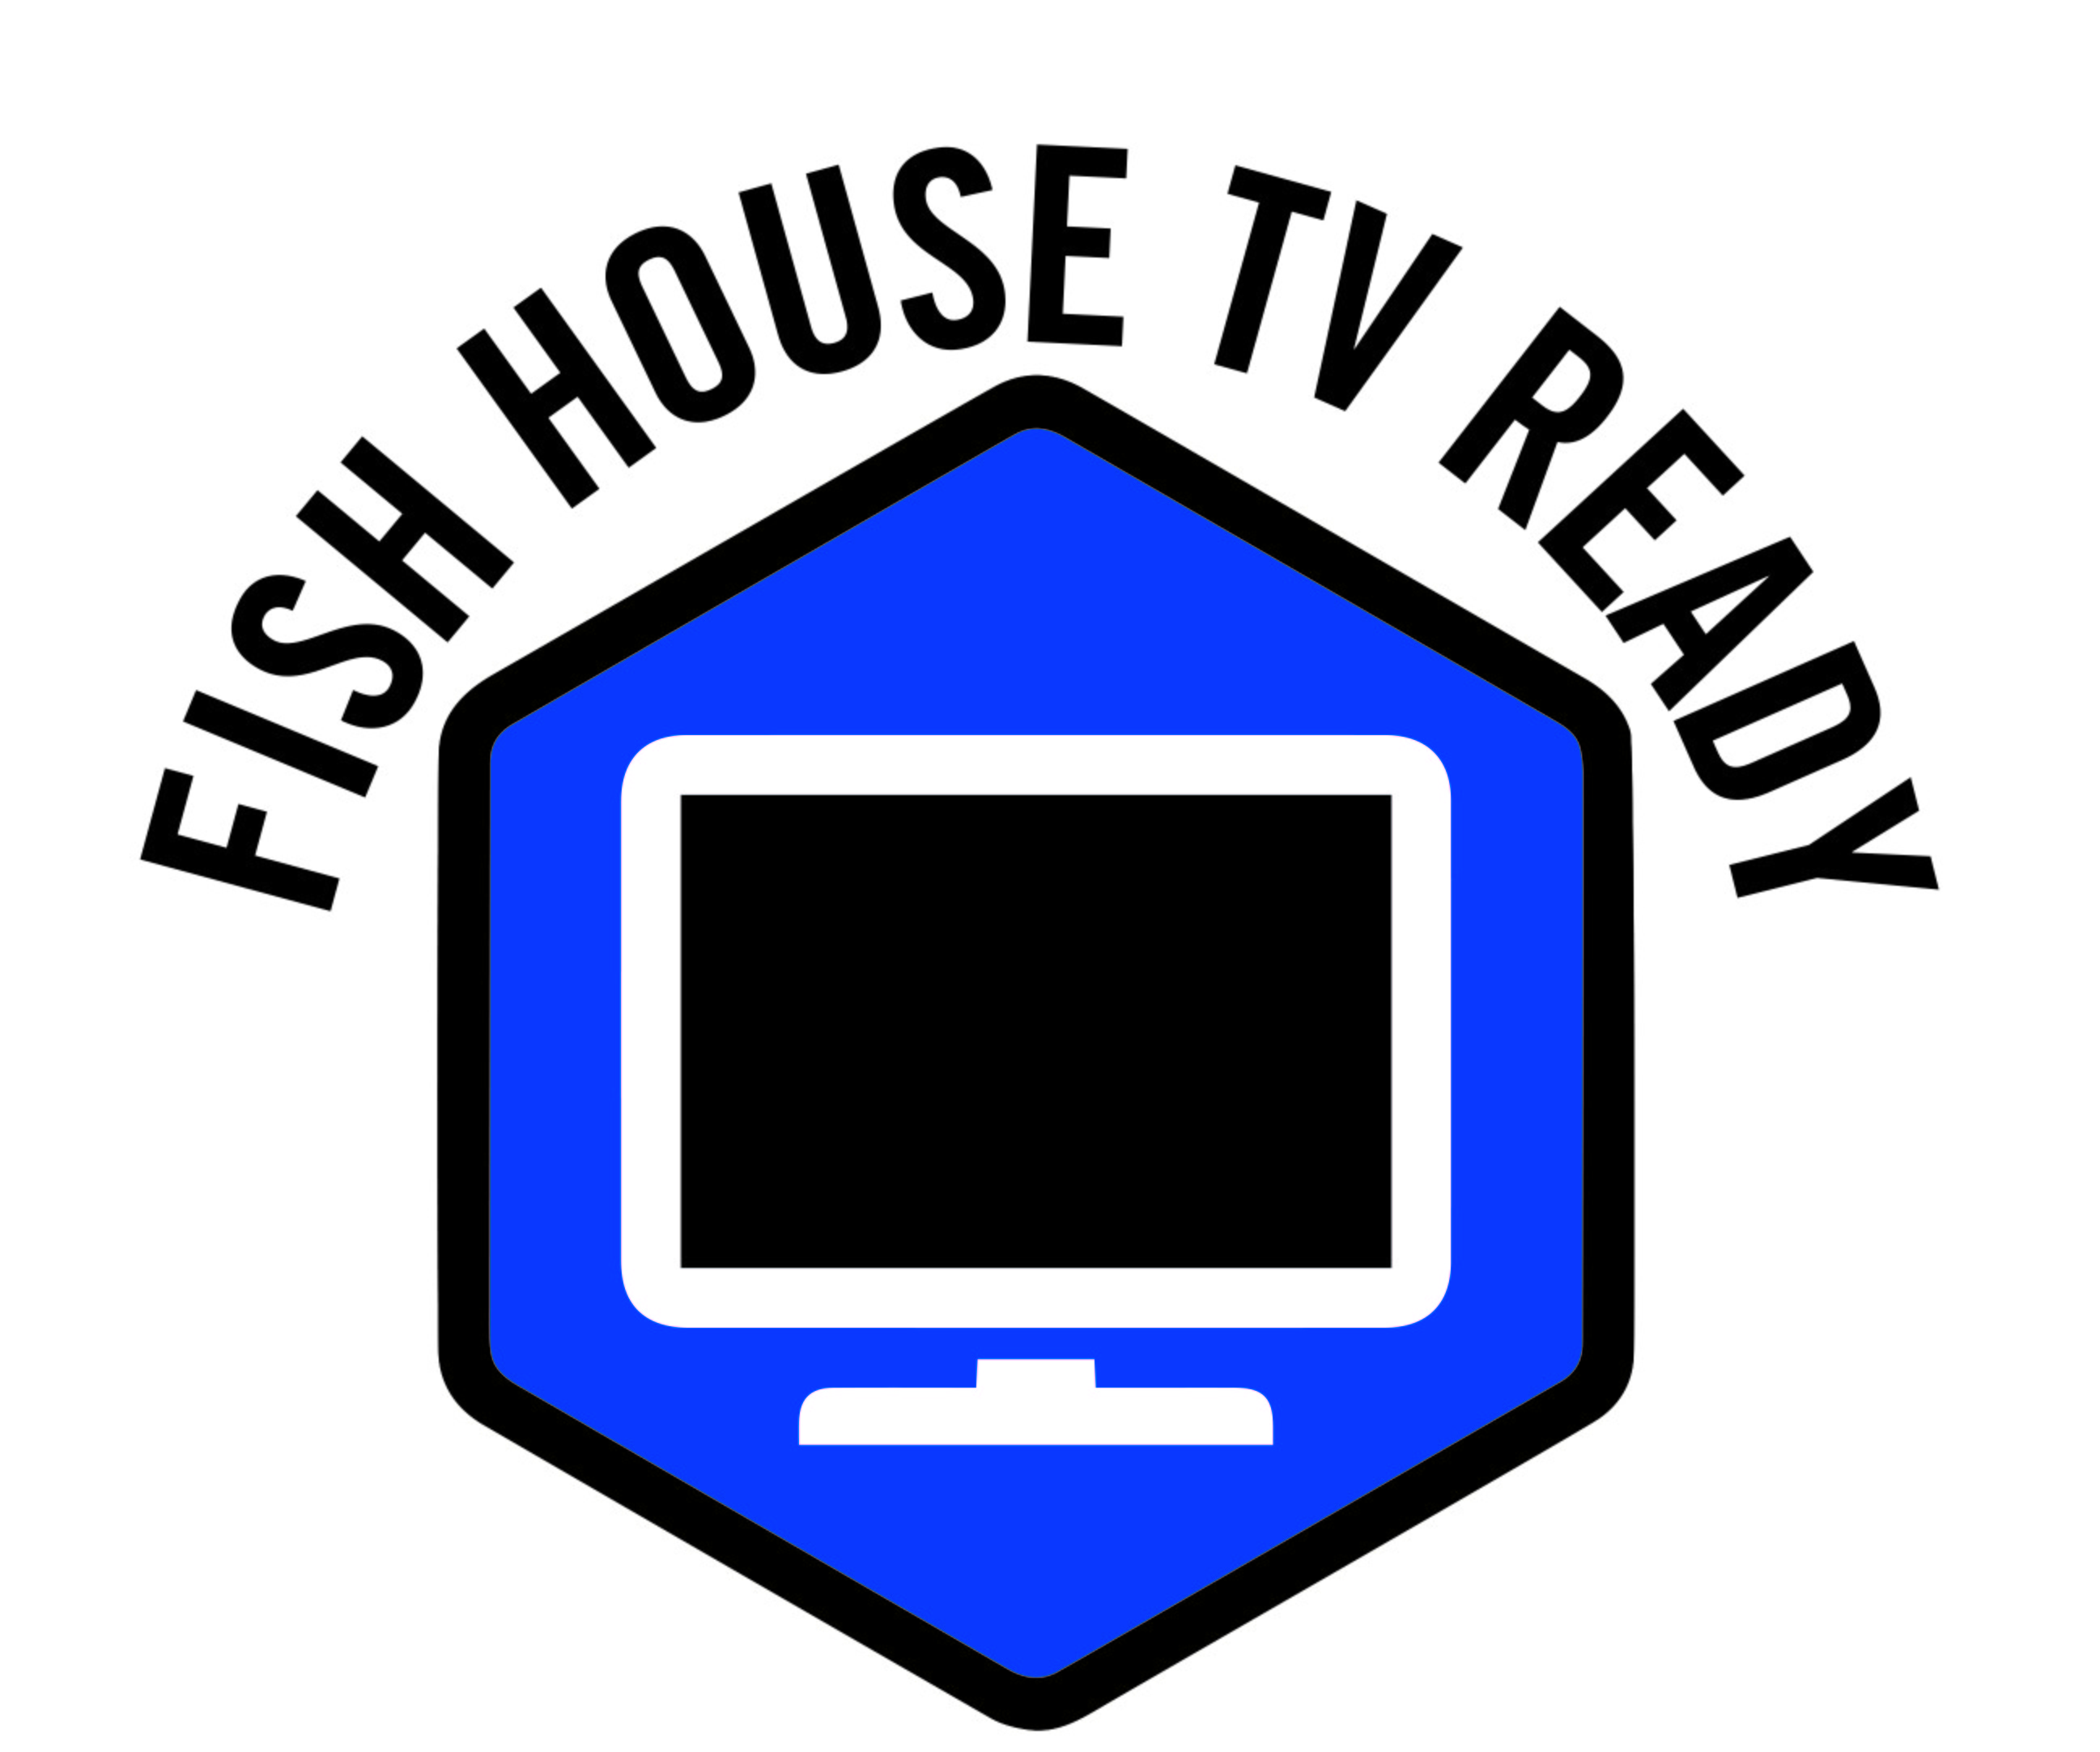 Fish House TV Ready